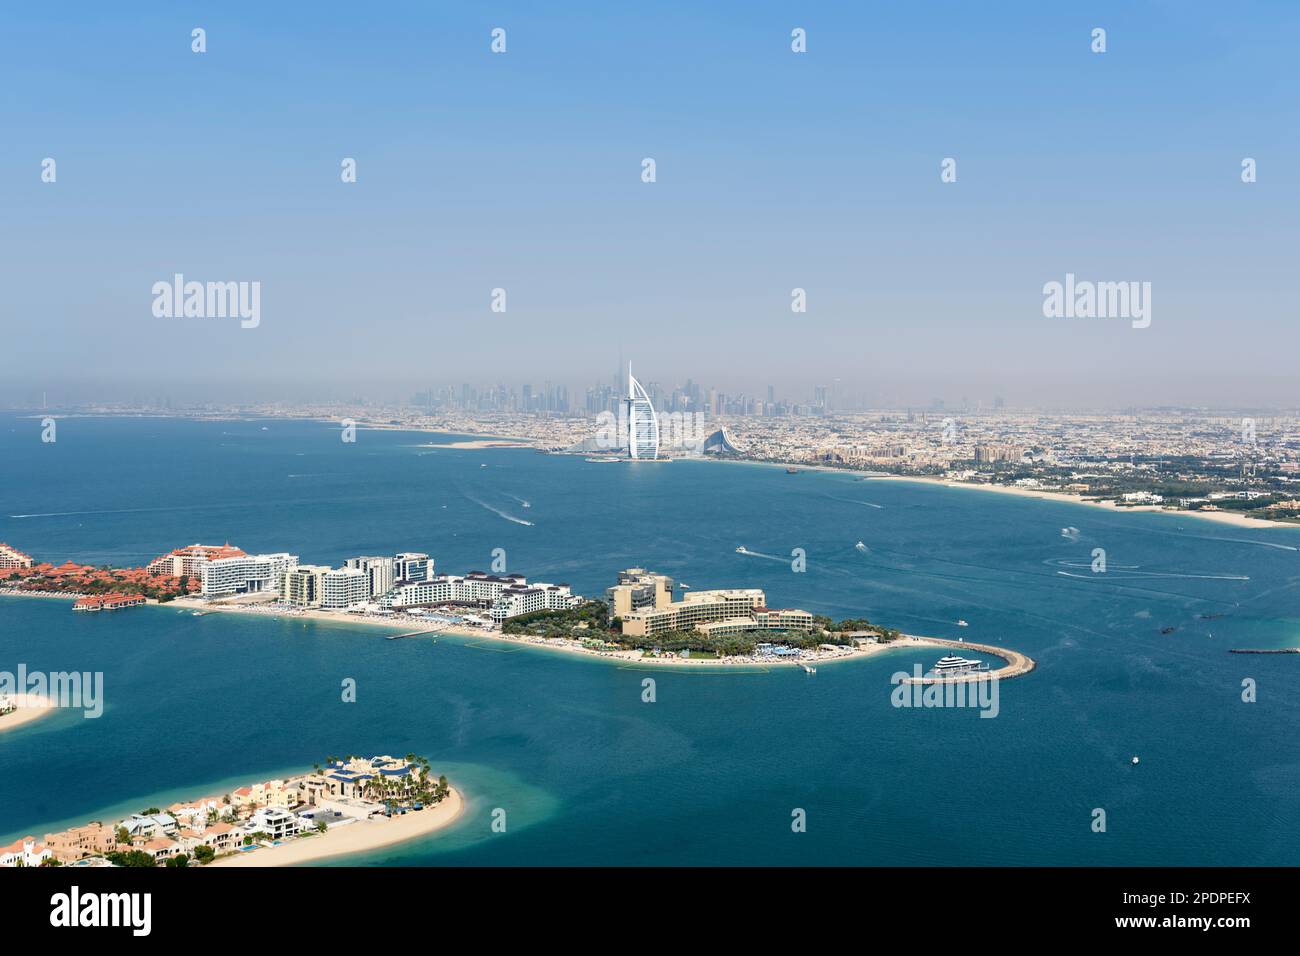 View of Burj Al Arab hotel, Burj Kalifa, Jumeirah Beach and Downtown Dubai from The View at the Palm, Palm Jumeirah, Dubai, United Arab Emirates Stock Photo